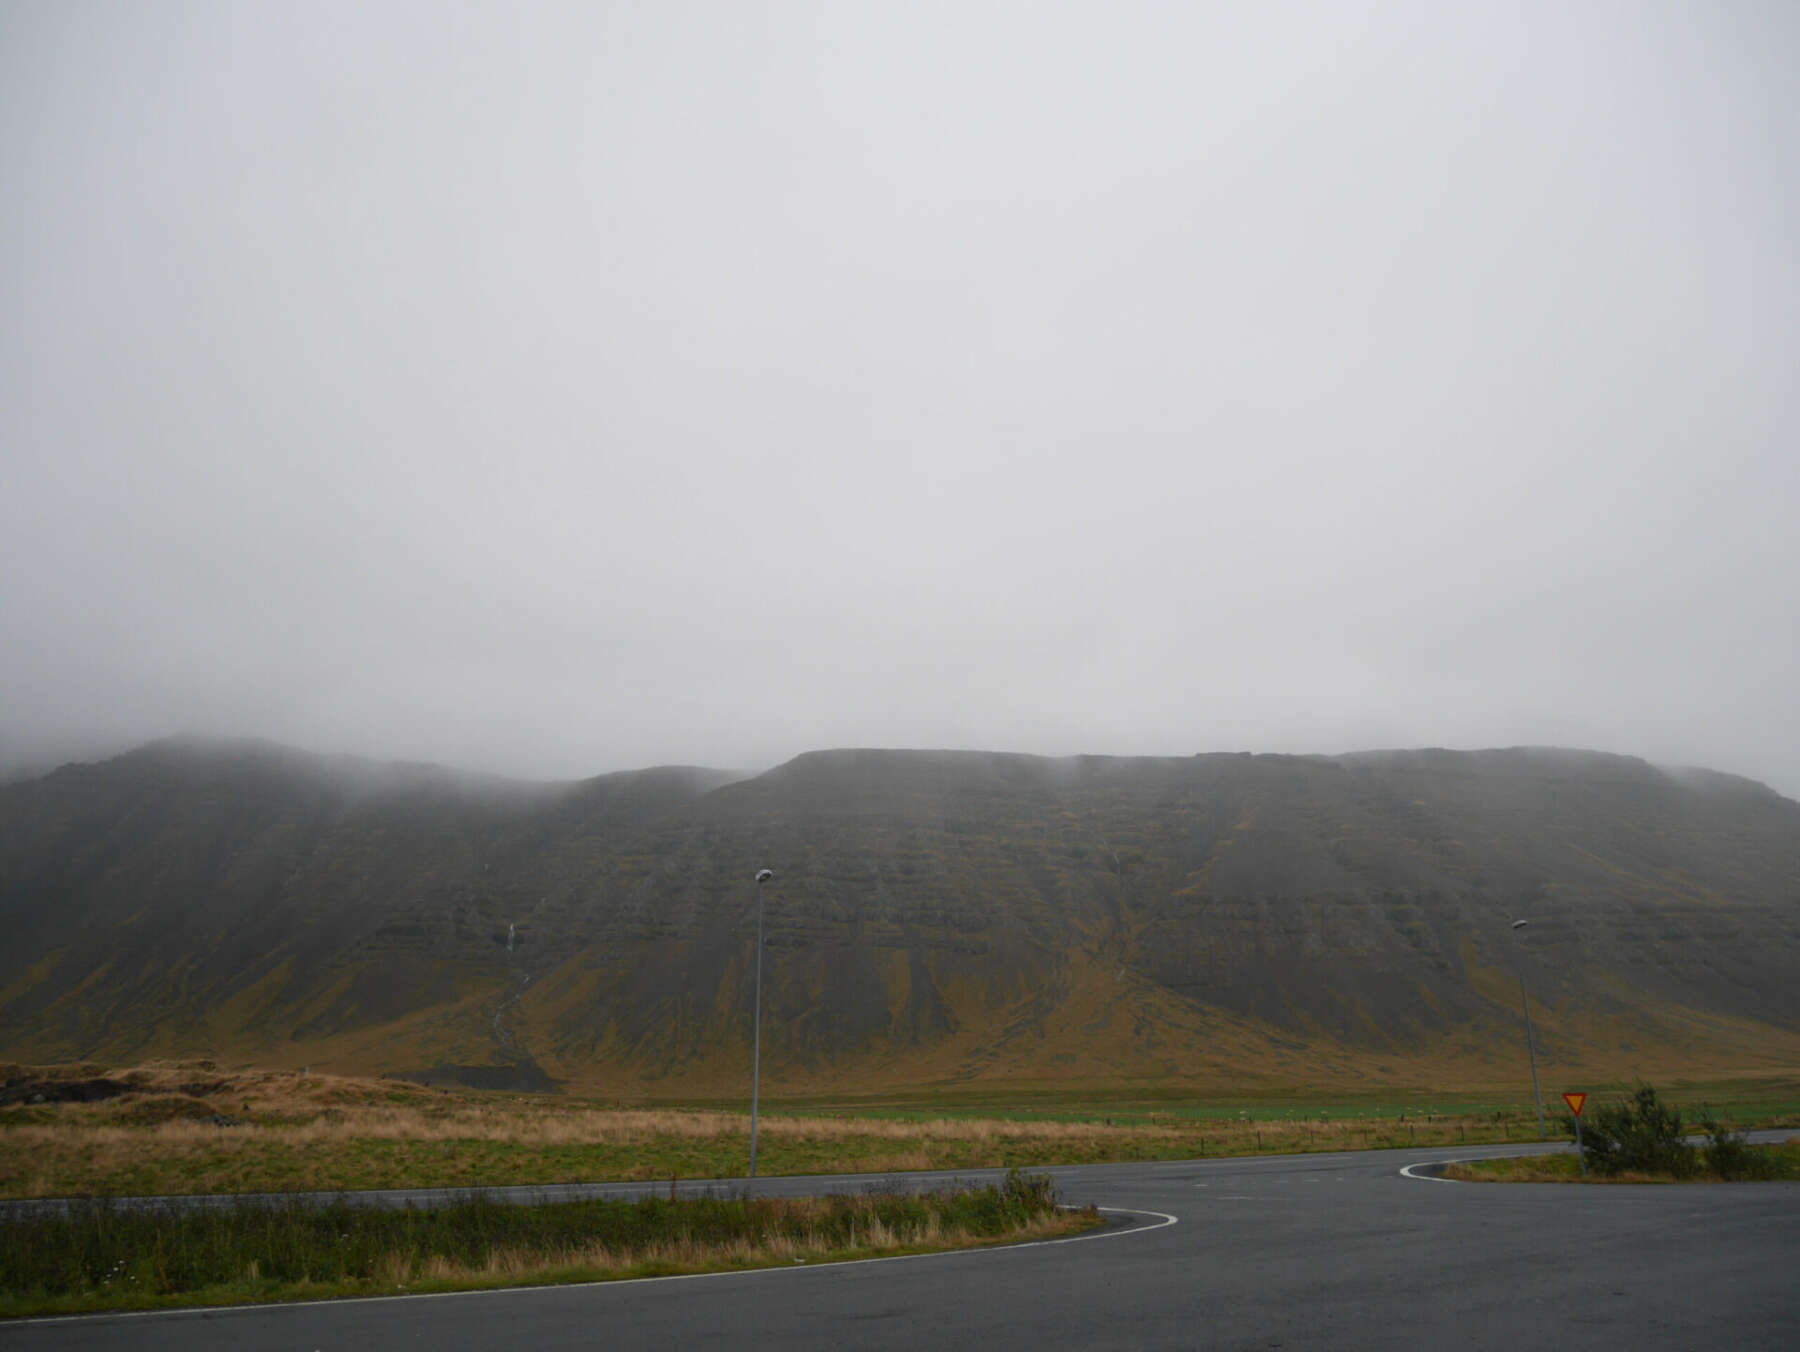 เที่ยวไอซ์แลนด์ด้วยตัวเอง